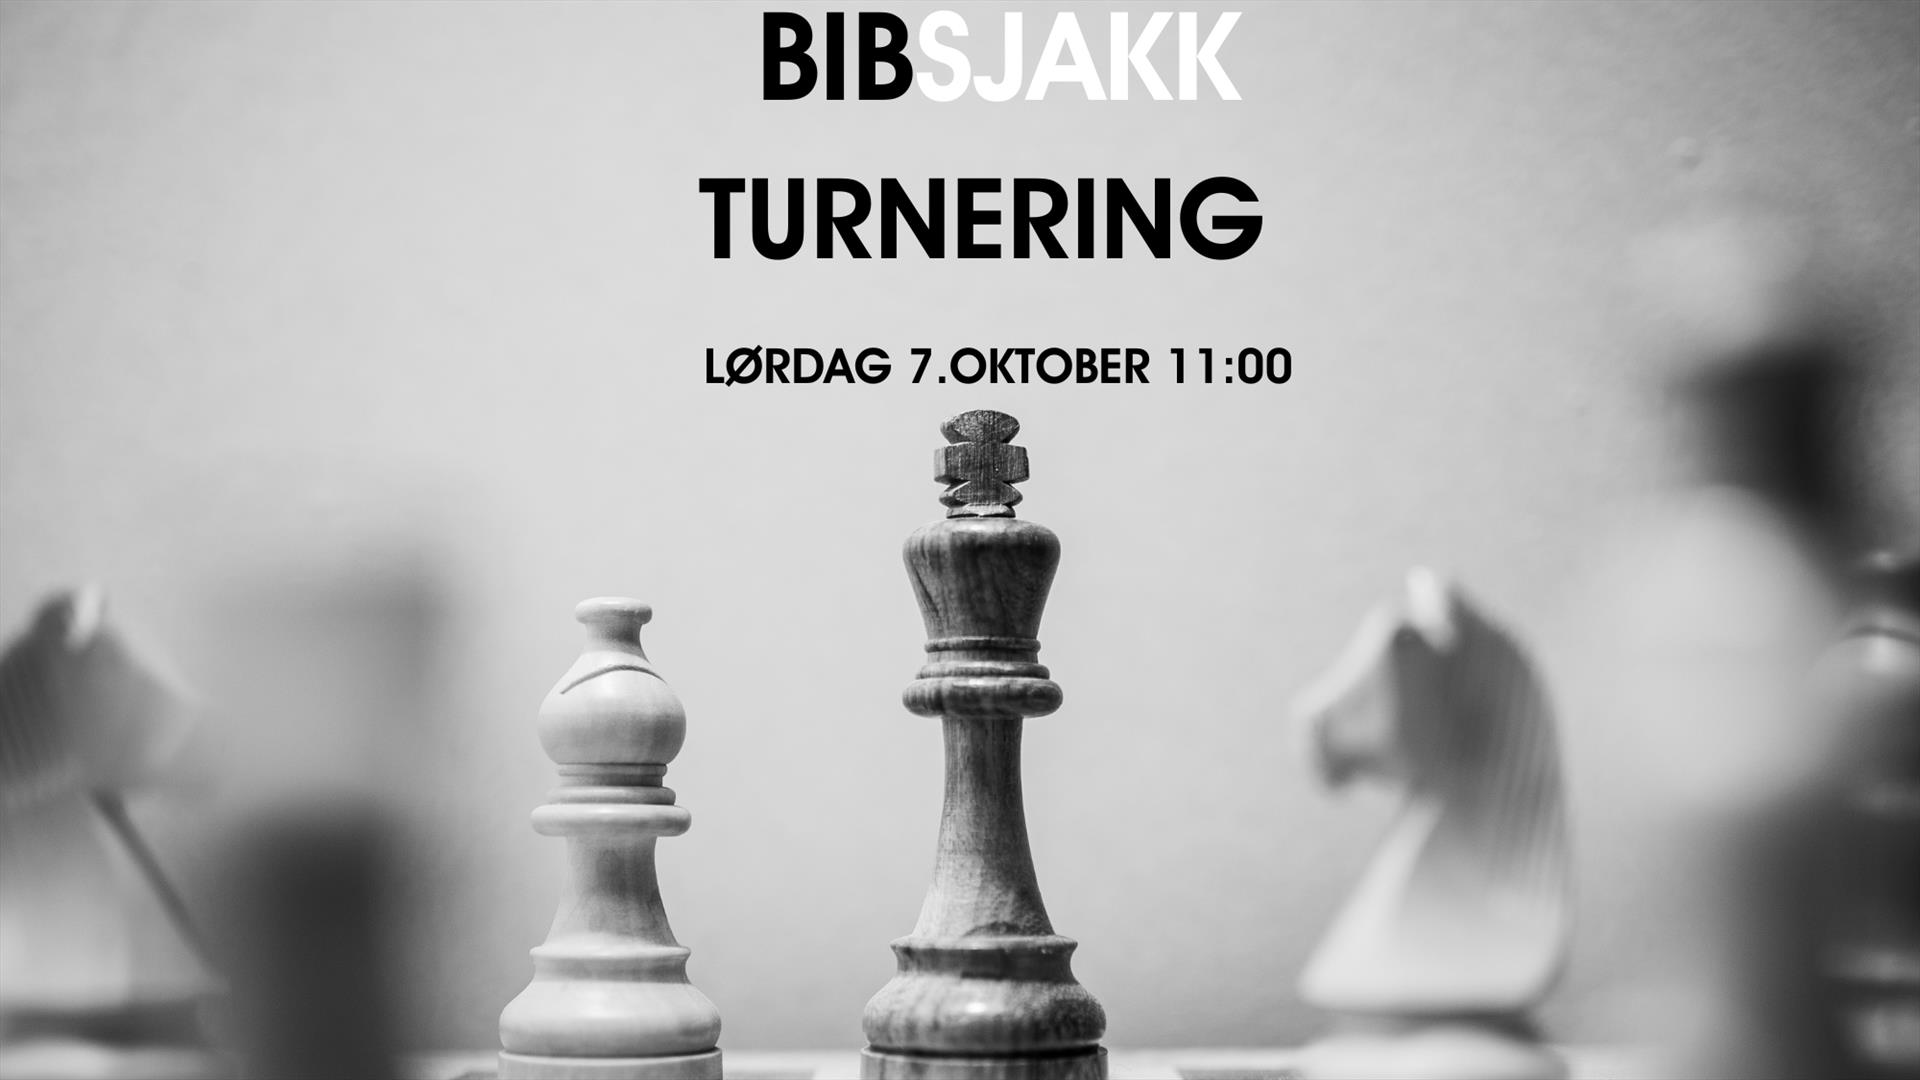 BibSjakk turnering